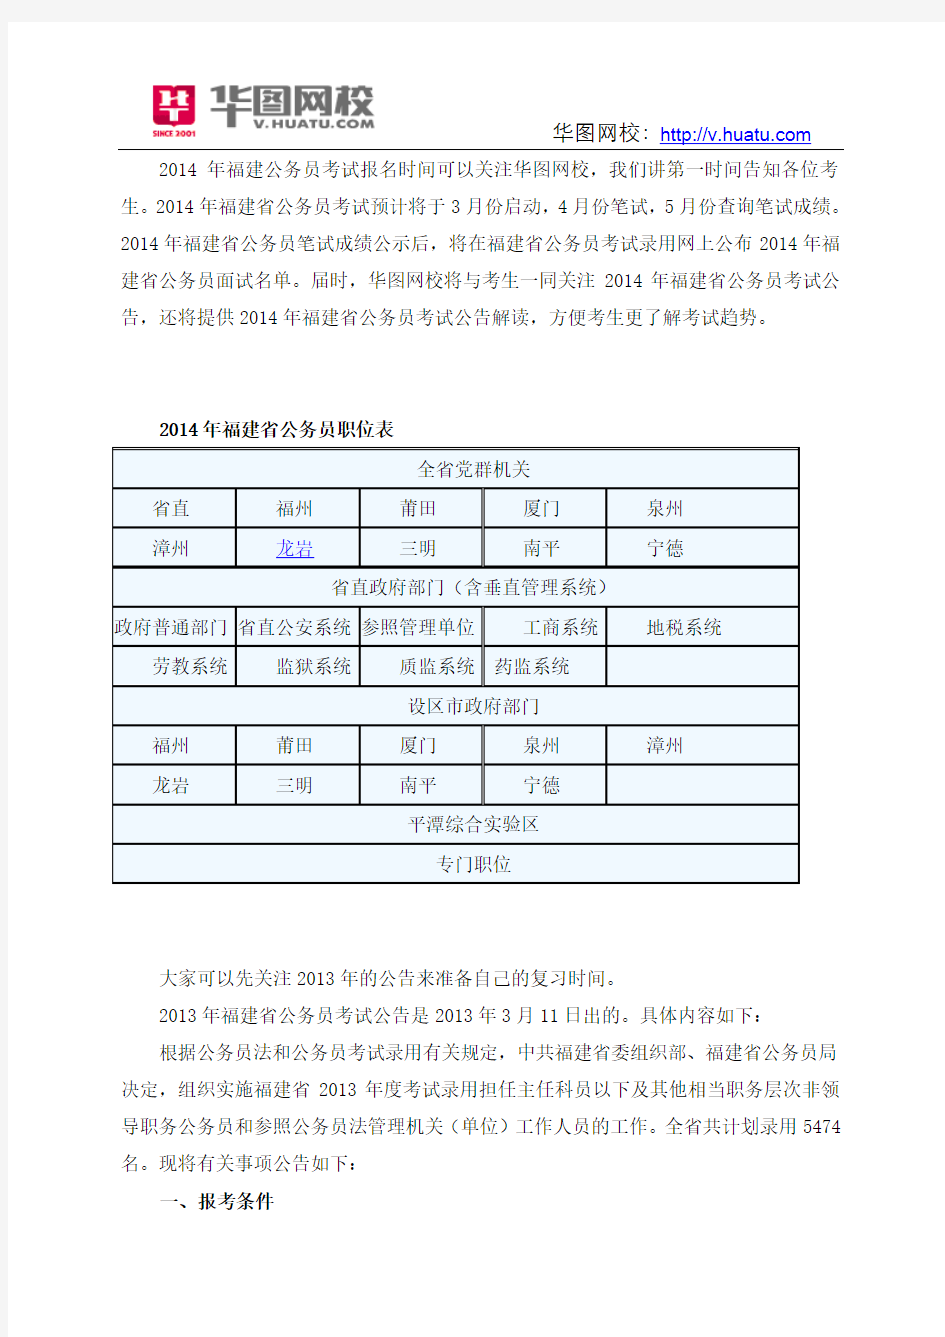 2014年福建省公务员考试职位表下载